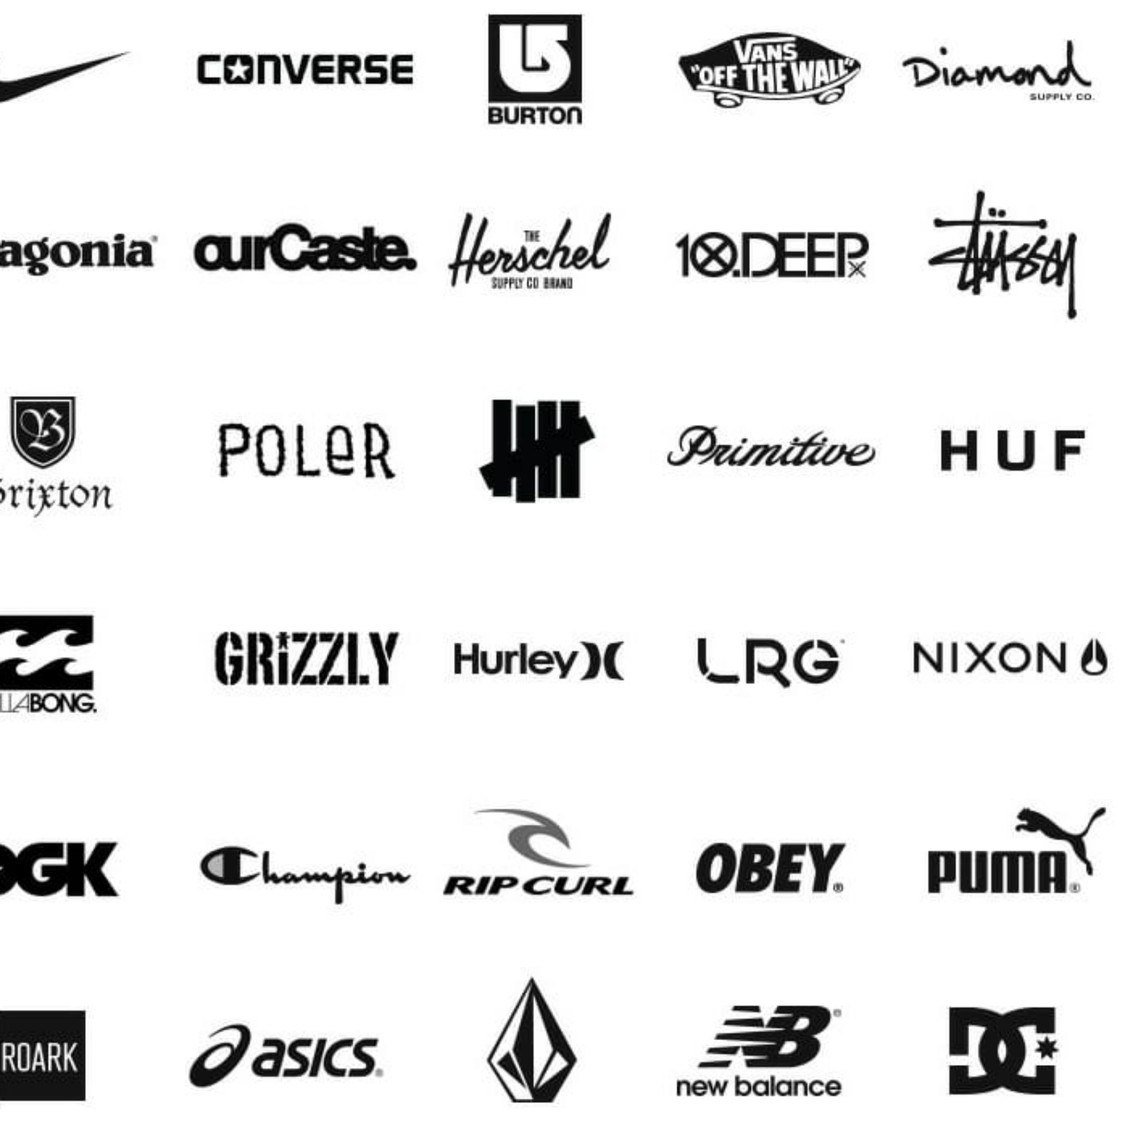 Список производителей спортивной одежды. Бренды одежды. Фирмы спортивной одежды. Спортивные марки одежды. Бренды спортивной обуви.